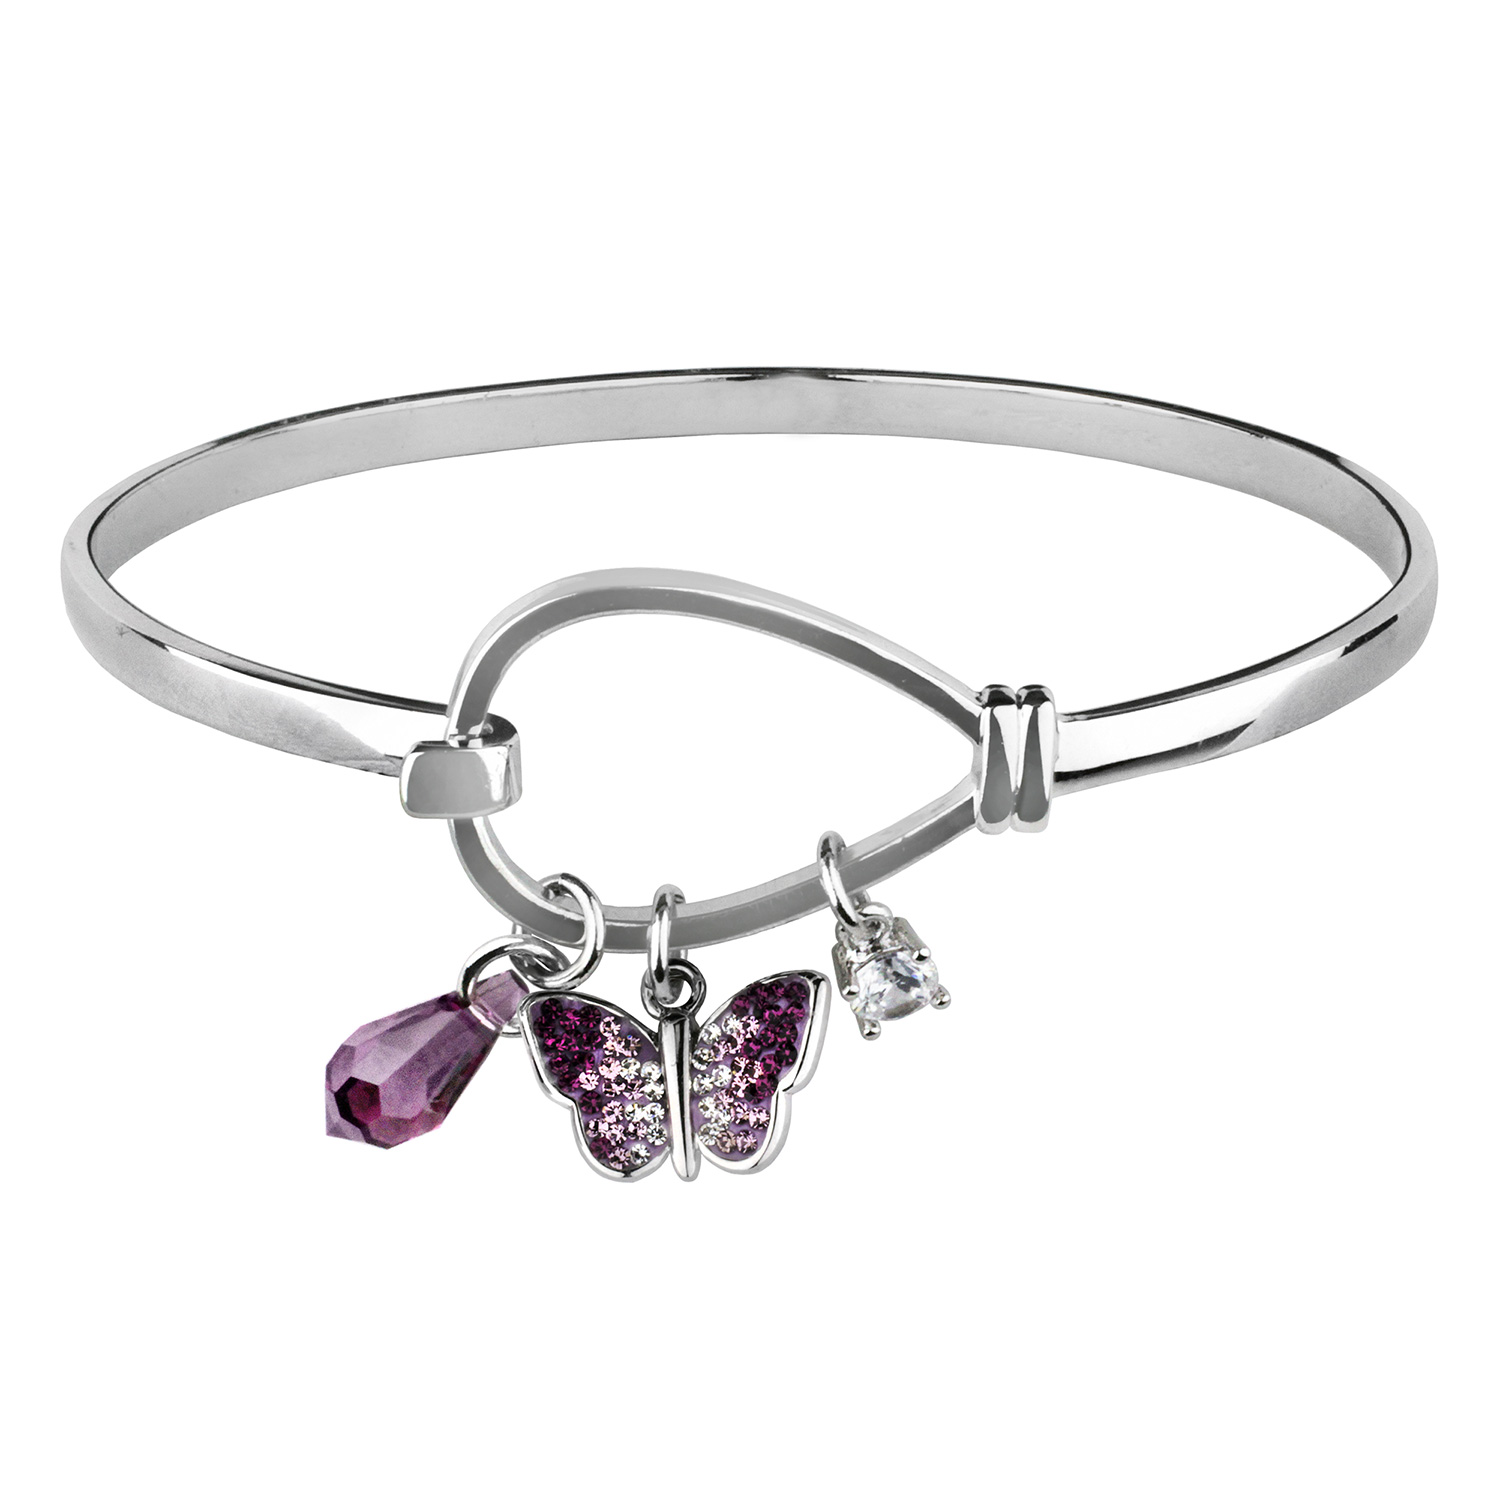  Crystal Butterfly Charm Bangle Bracelet